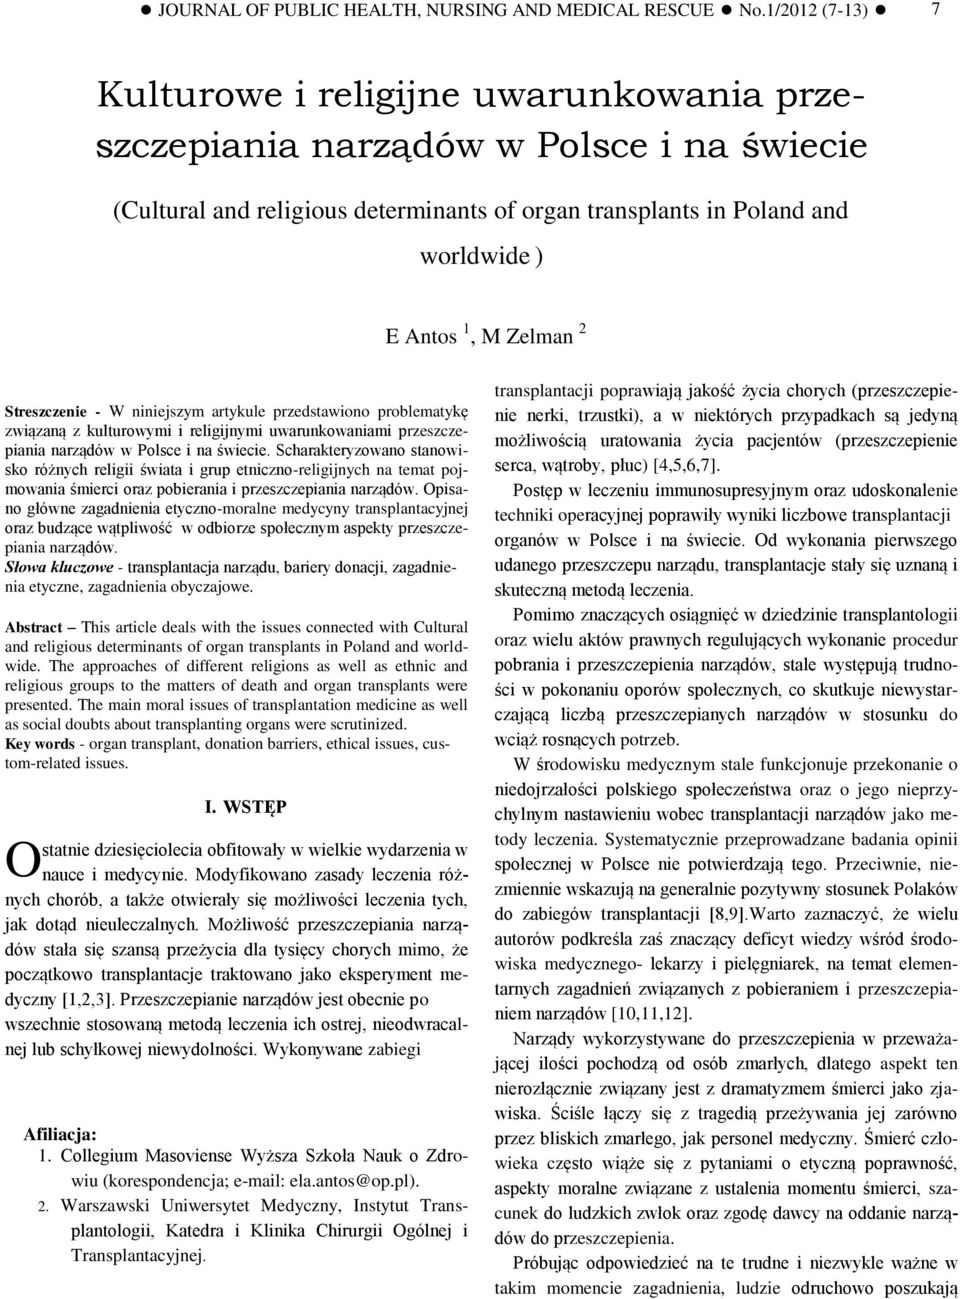 of organ transplants in Poland and worldwide ) E Antos 1, M Zelman 2 Streszczenie - W niniejszym artykule przedstawiono problematykę związaną z kulturowymi i religijnymi uwarunkowaniami